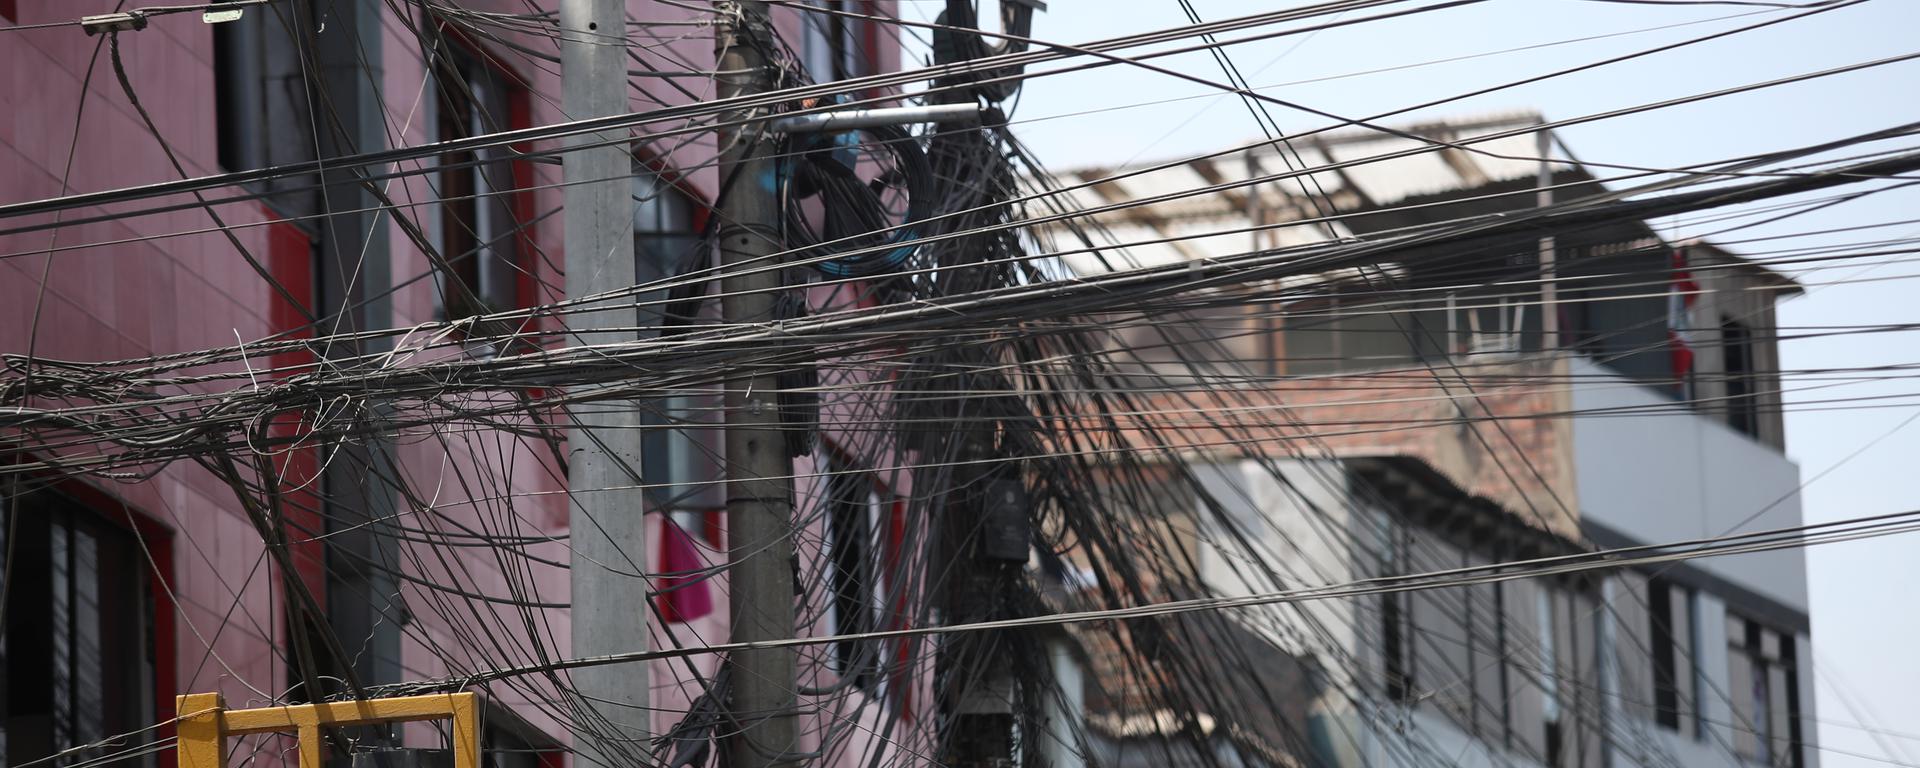 Empresas de telefonía y electricidad deberán retirar cables en desuso: ¿Quiénes supervisarán su ejecución? | FOTOS